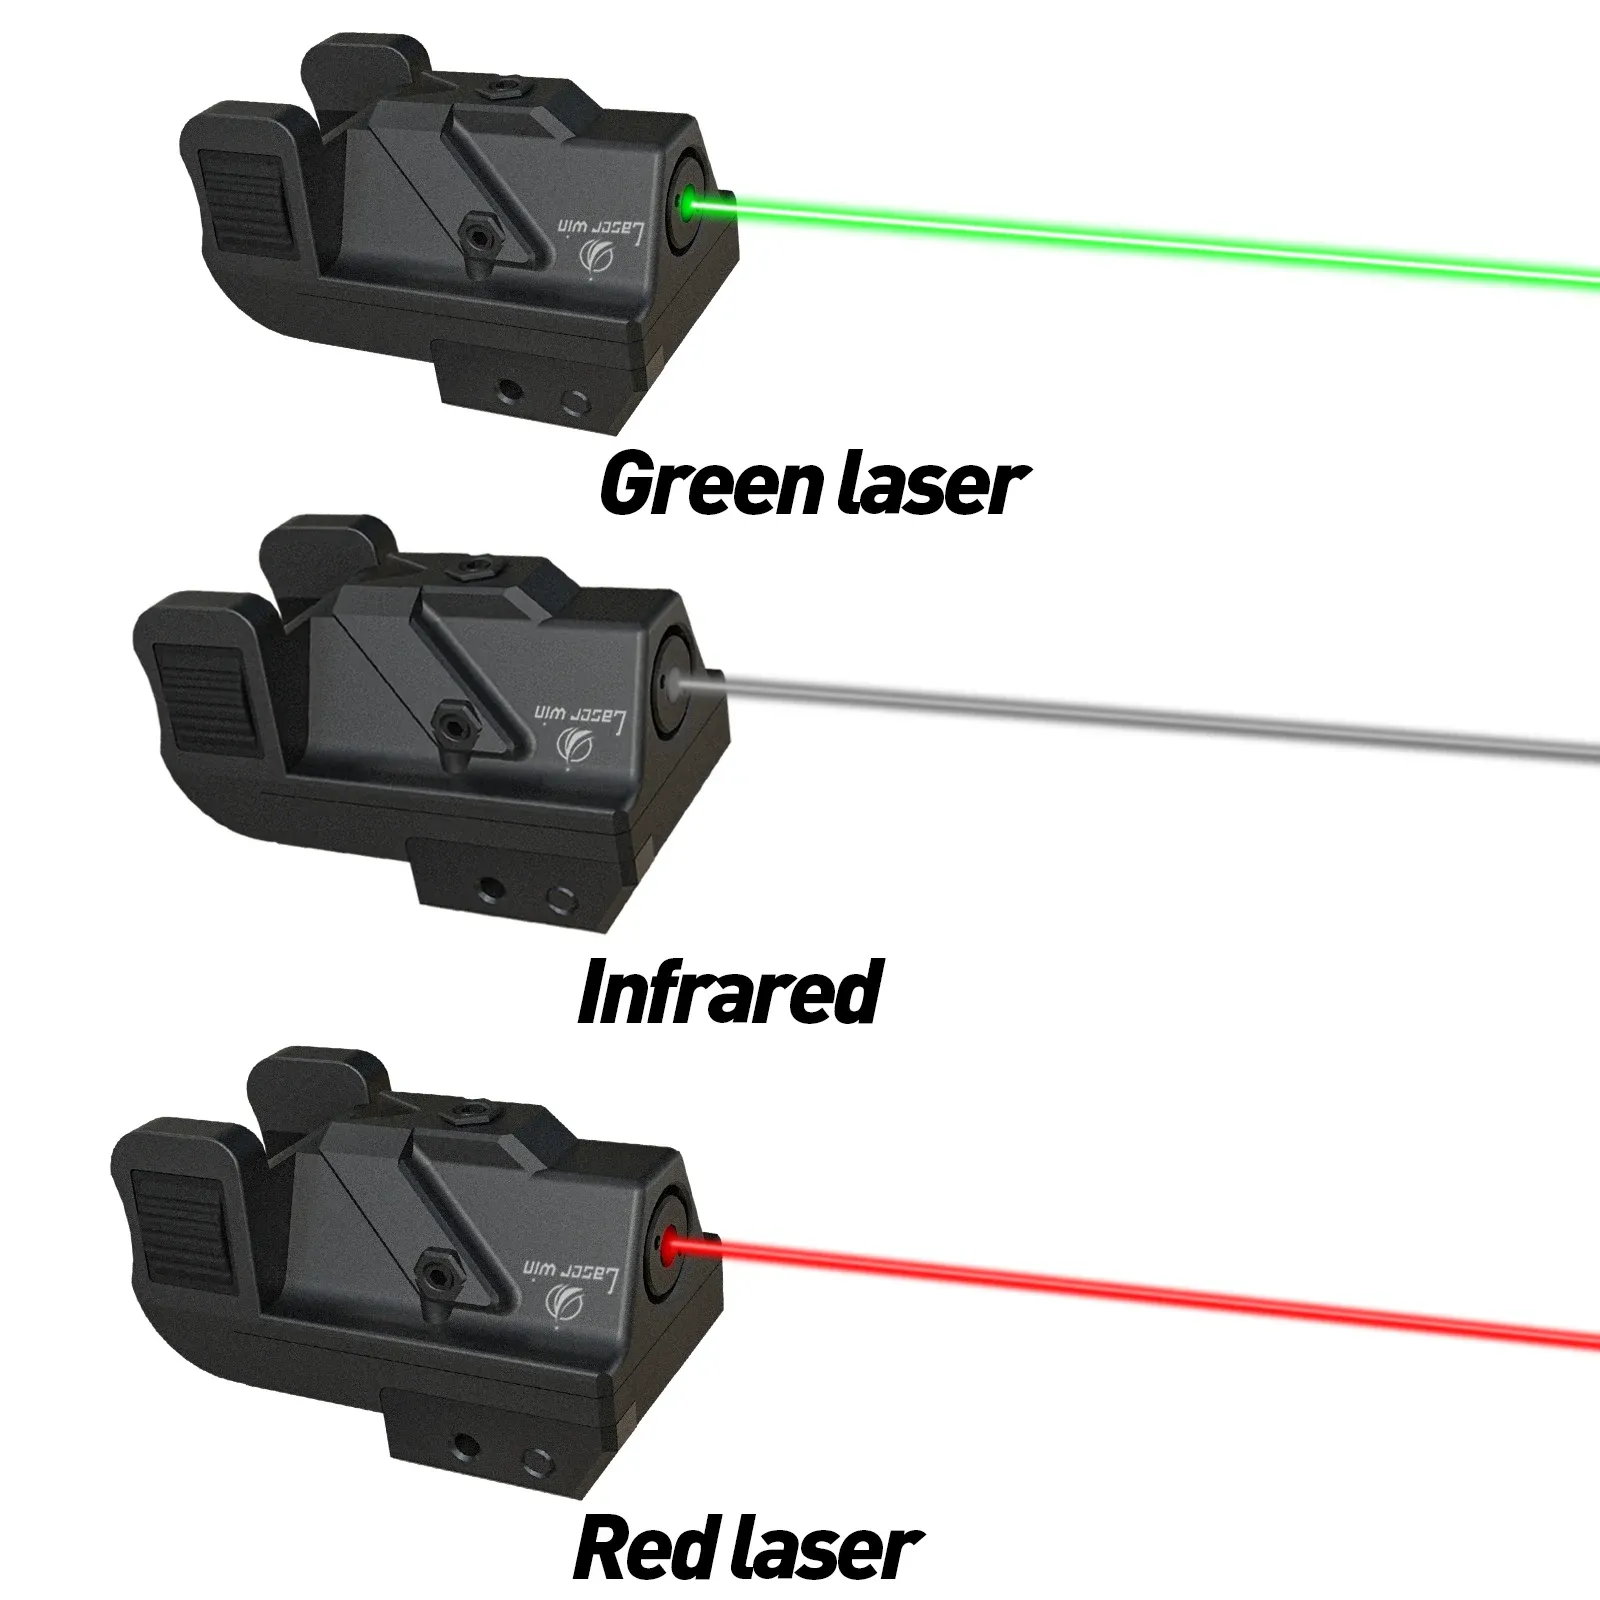 Optics Tactical Laser Sight for Picatinny Weaver Rail Mount för Pistol Handgun Rifle stötsäker lasersyn kompatibel med Glock 17 19